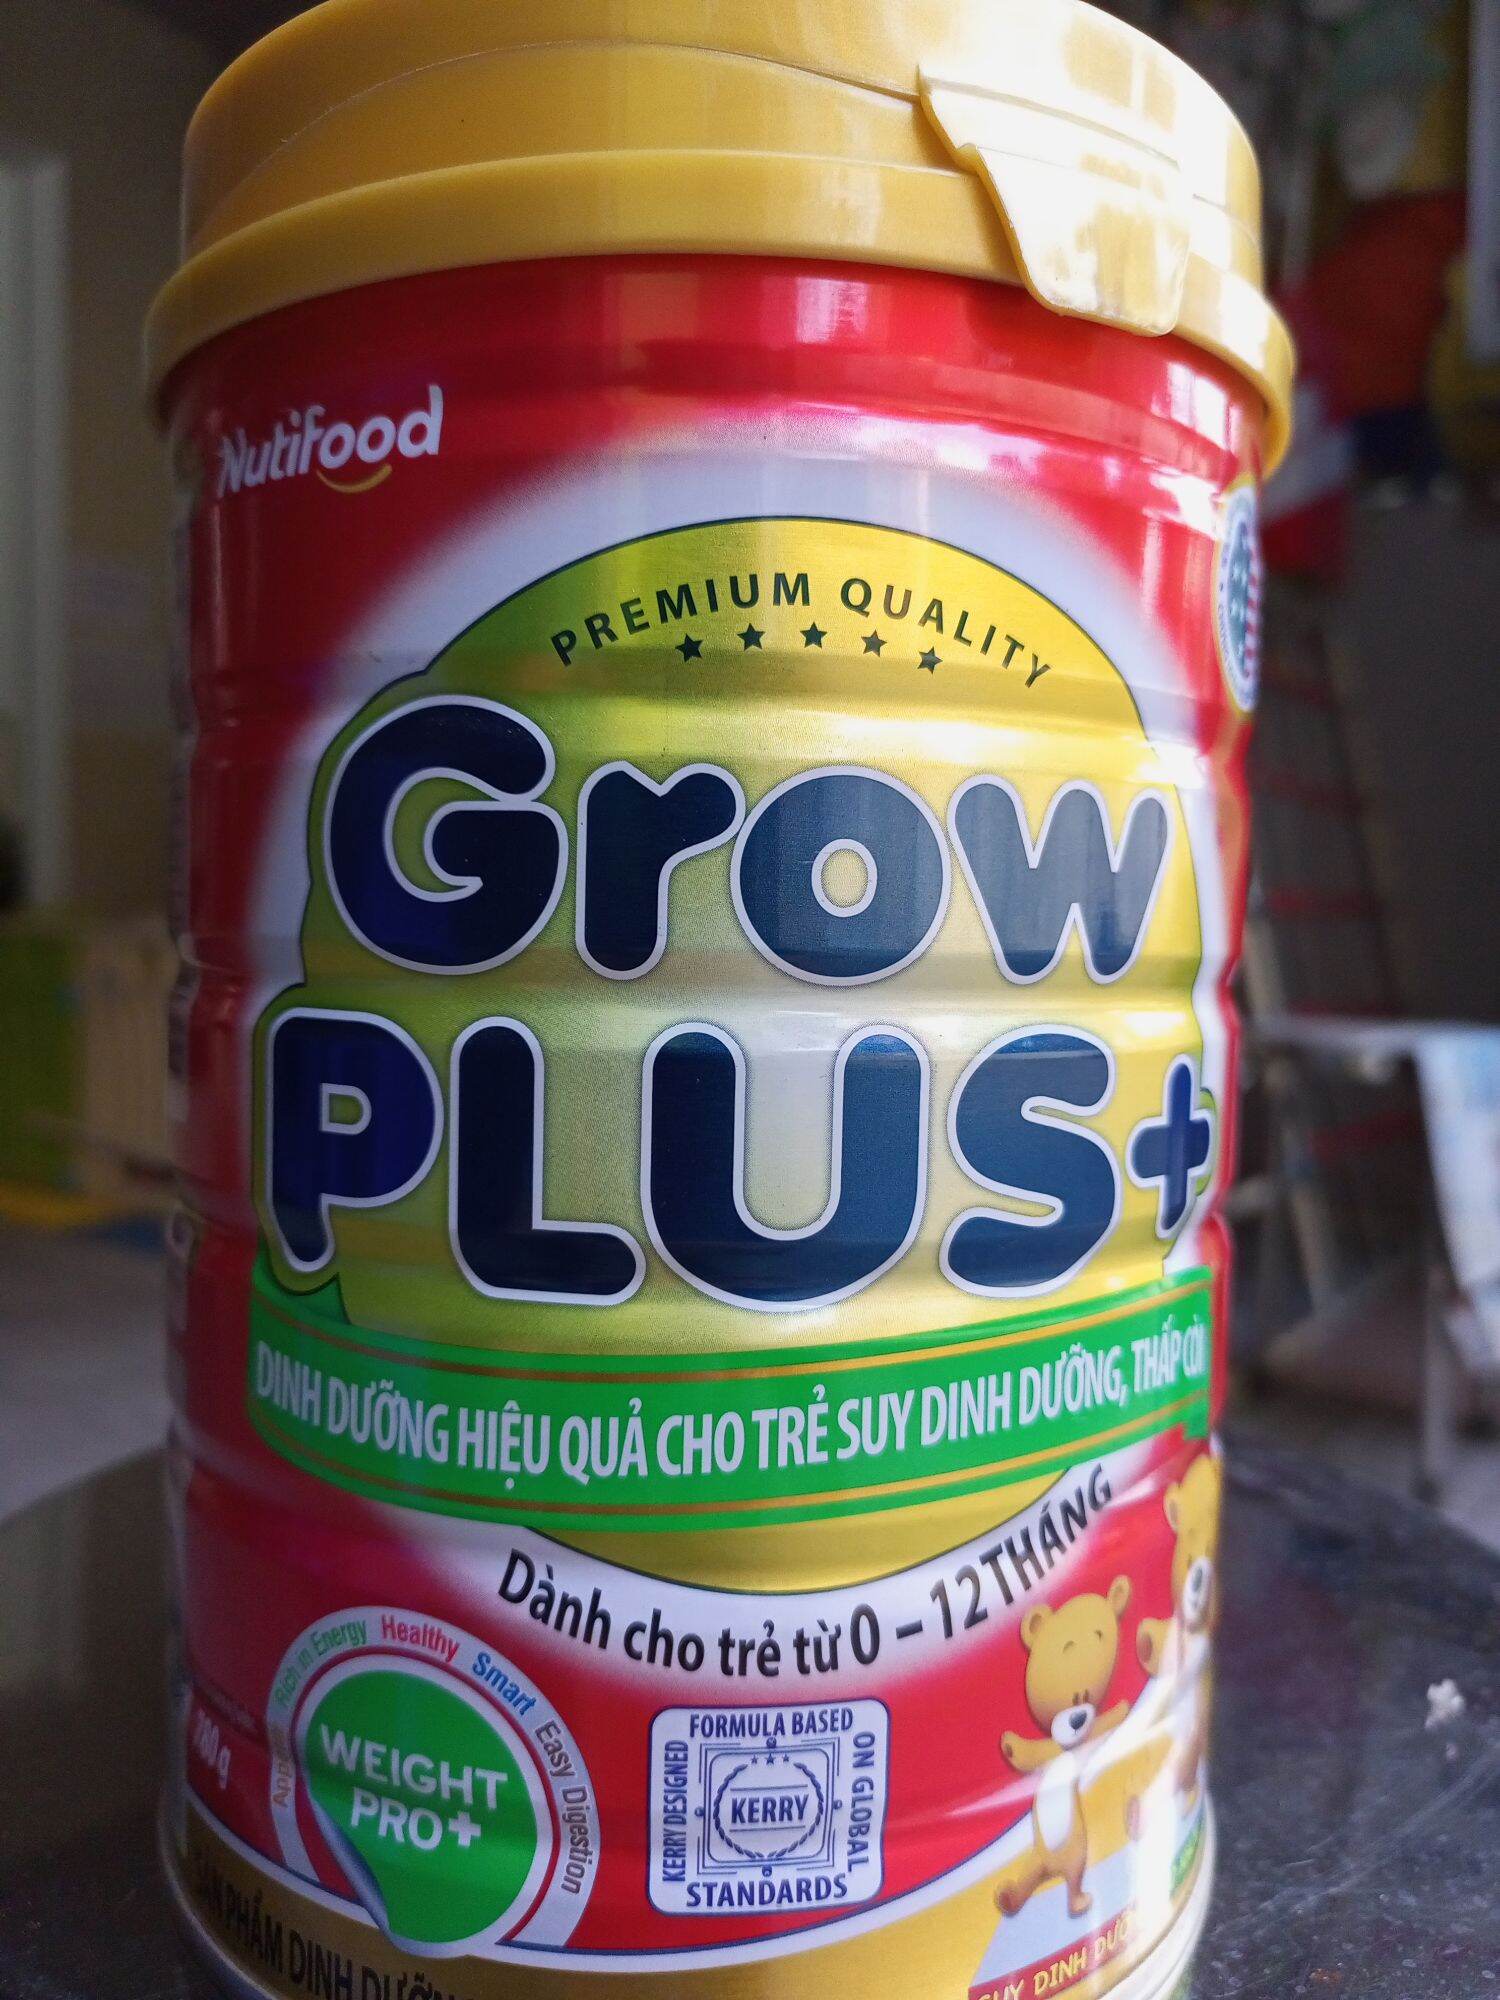 Grow plus 0+ Nutifood Sữa dinh dưỡng cho trẻ suy dinh dưỡng, thấp còi 0